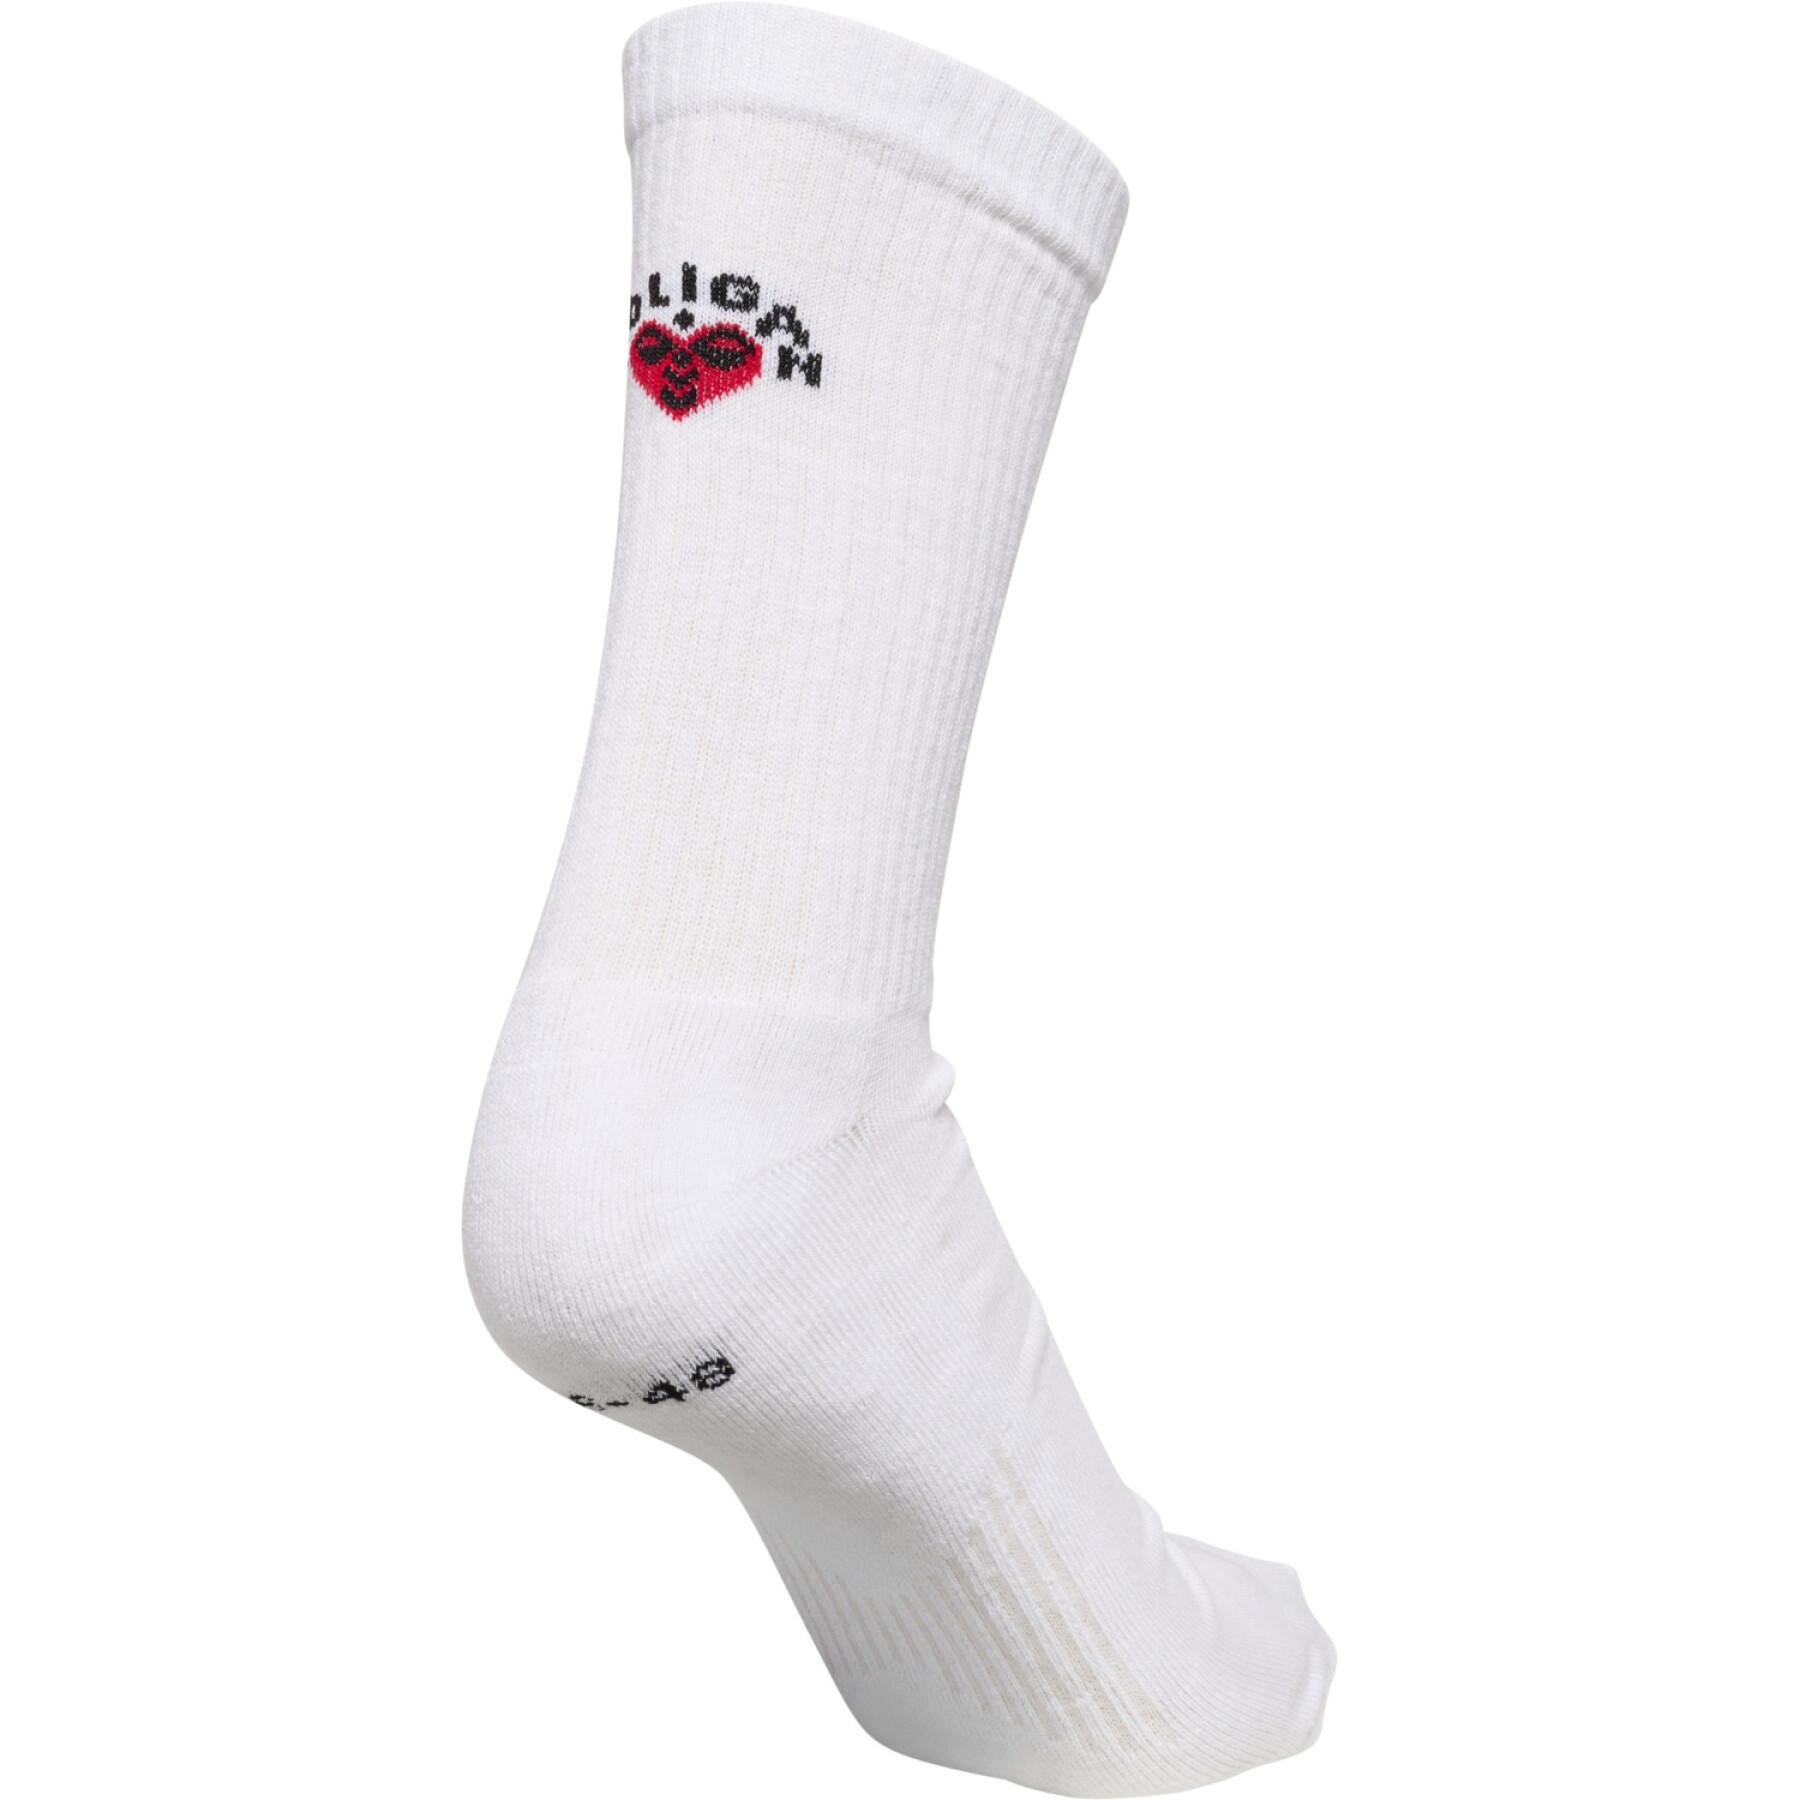 Paar sokken Hummel Roligan (x2)